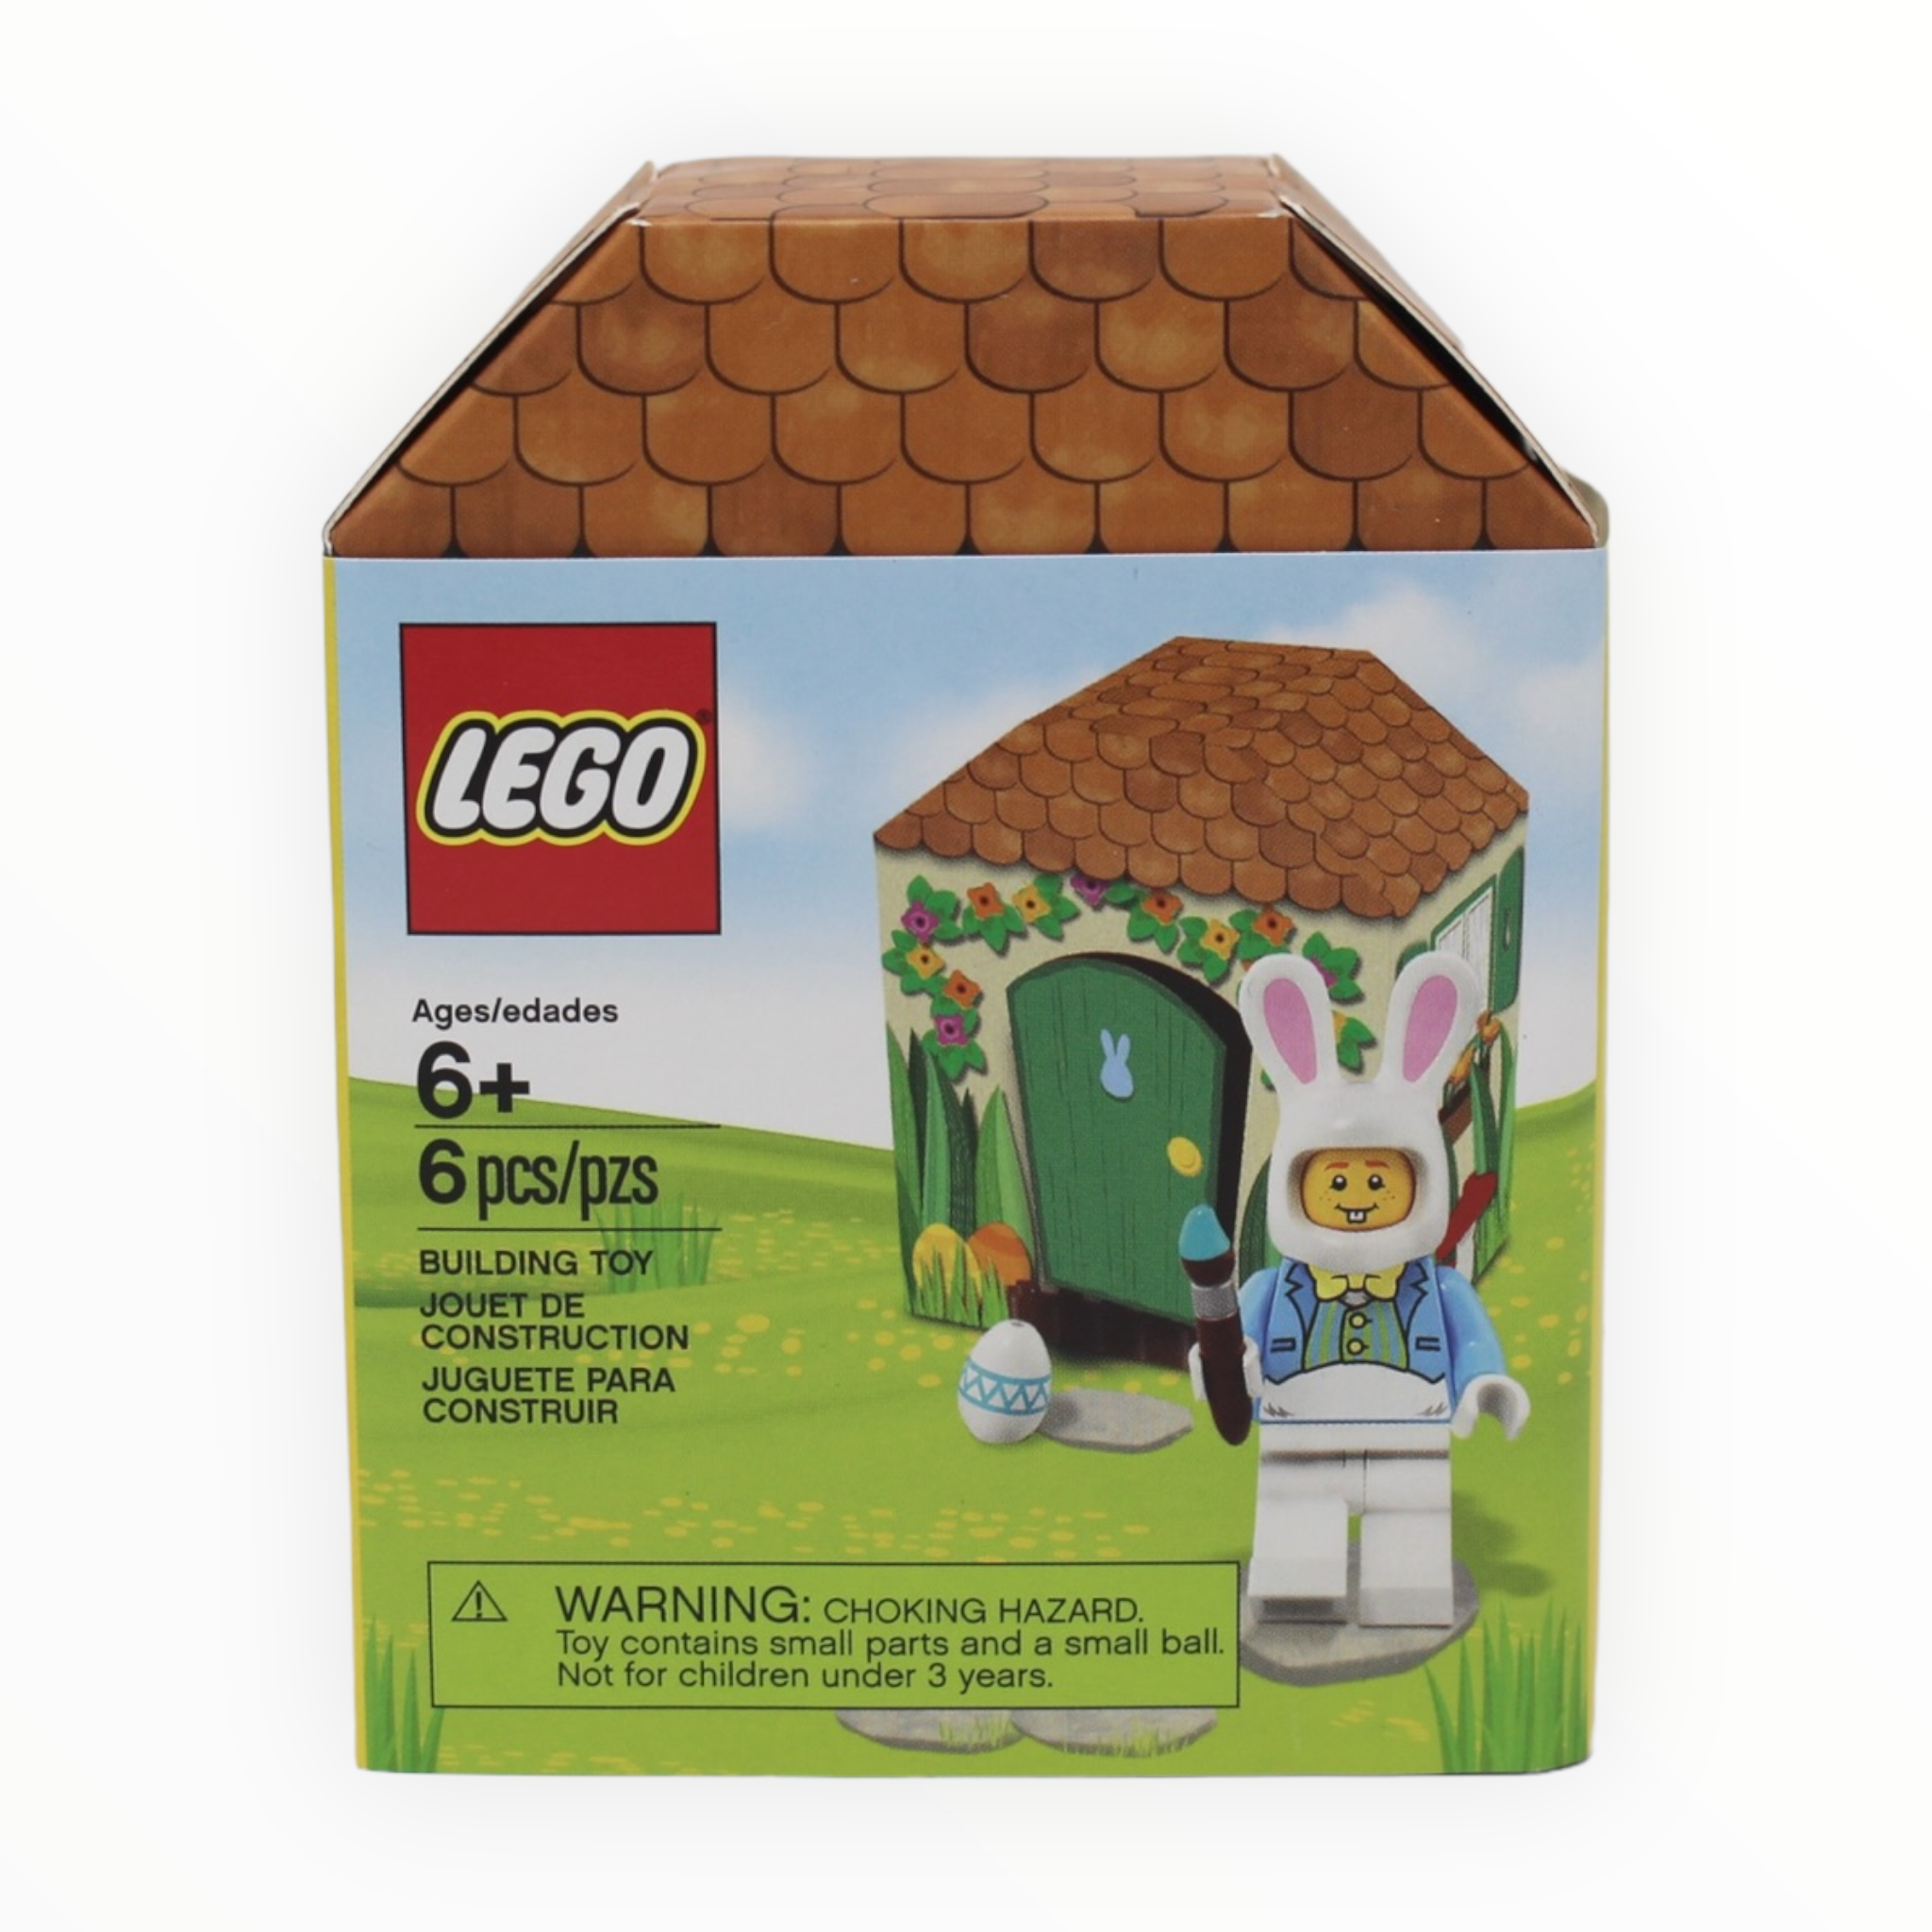 Retired Set 5005249 LEGO Iconic Easter